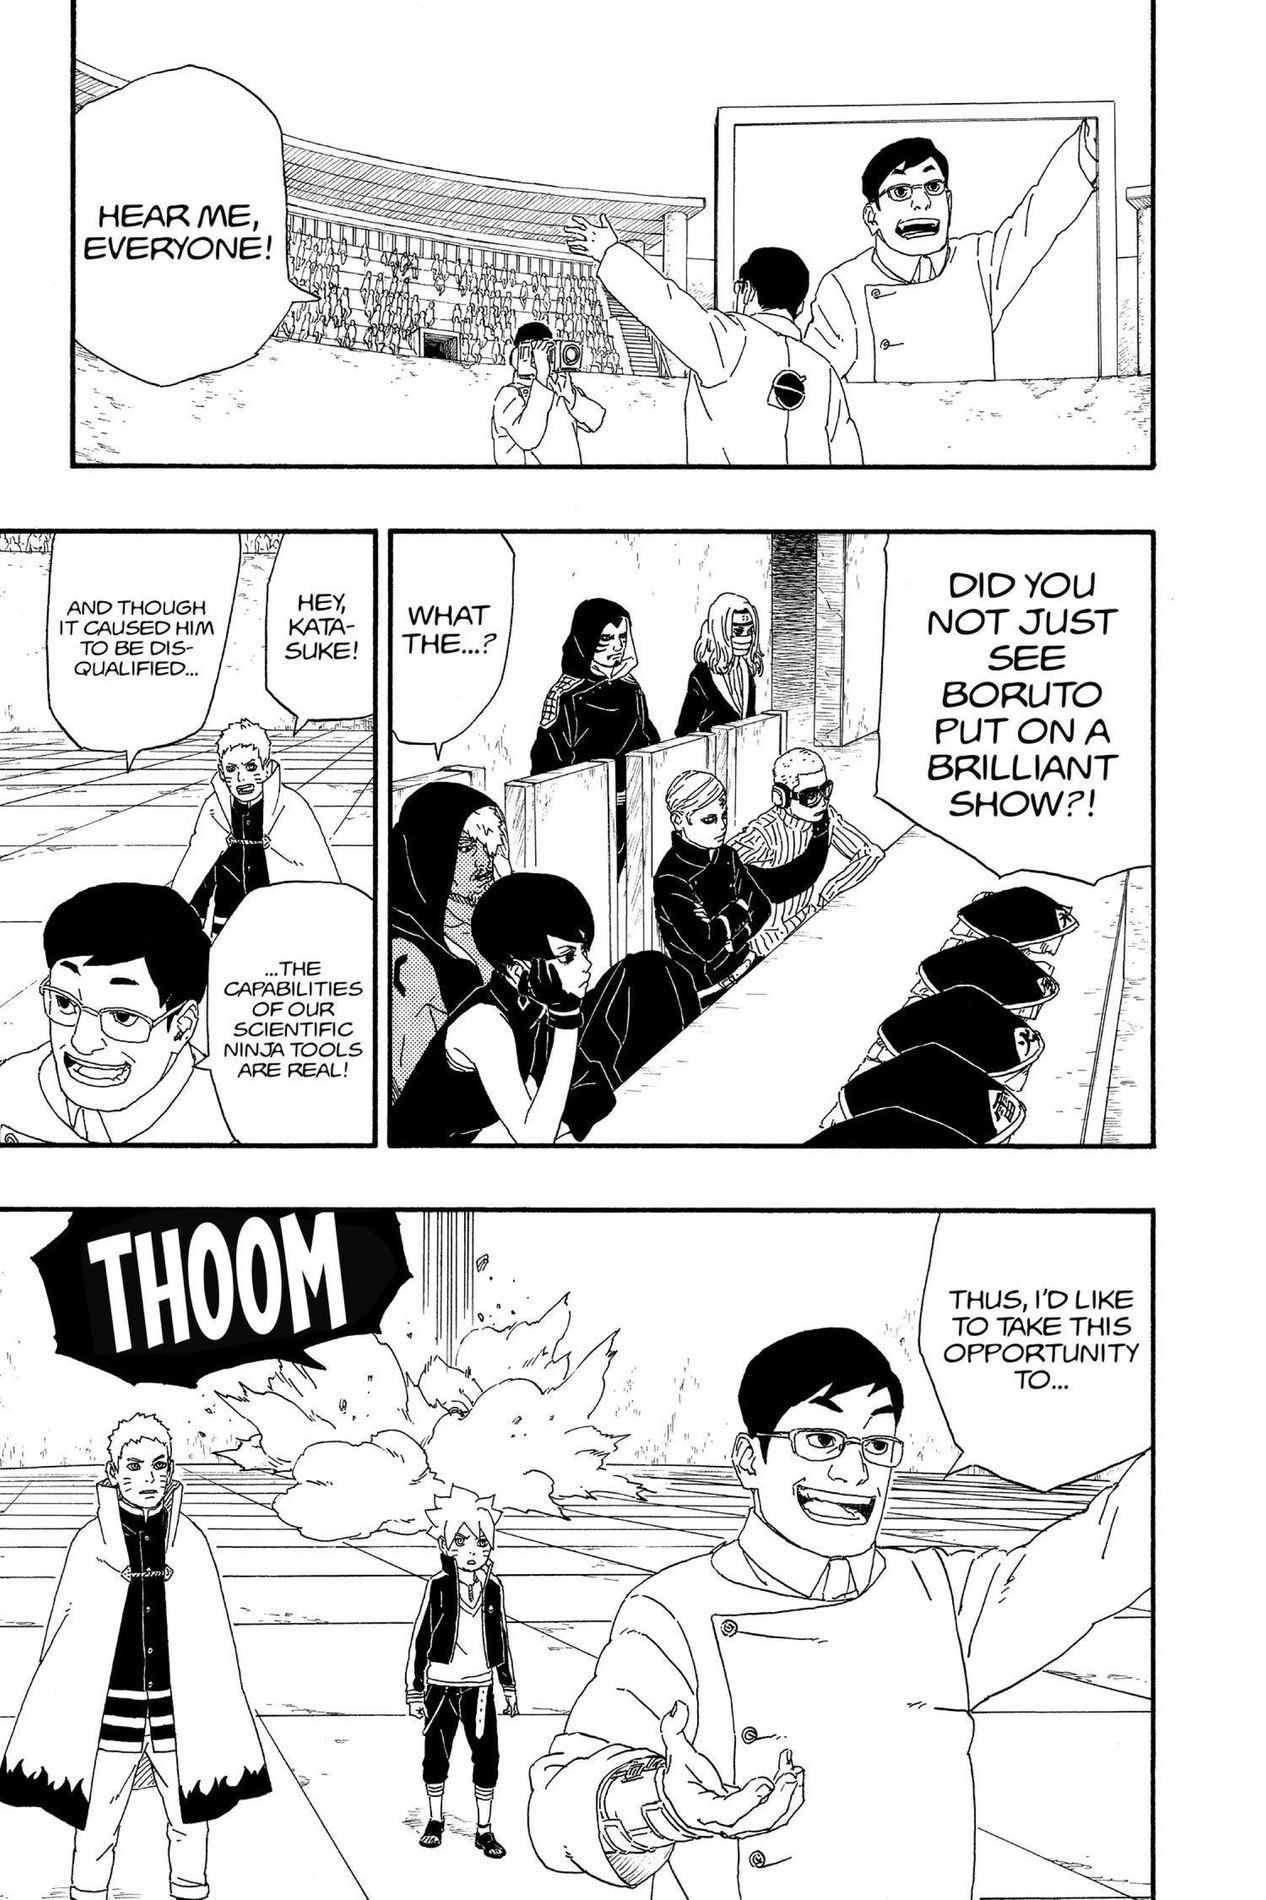 Boruto Chapter 5 - Momoshiki And Kinshiki!! - Boruto Manga Online